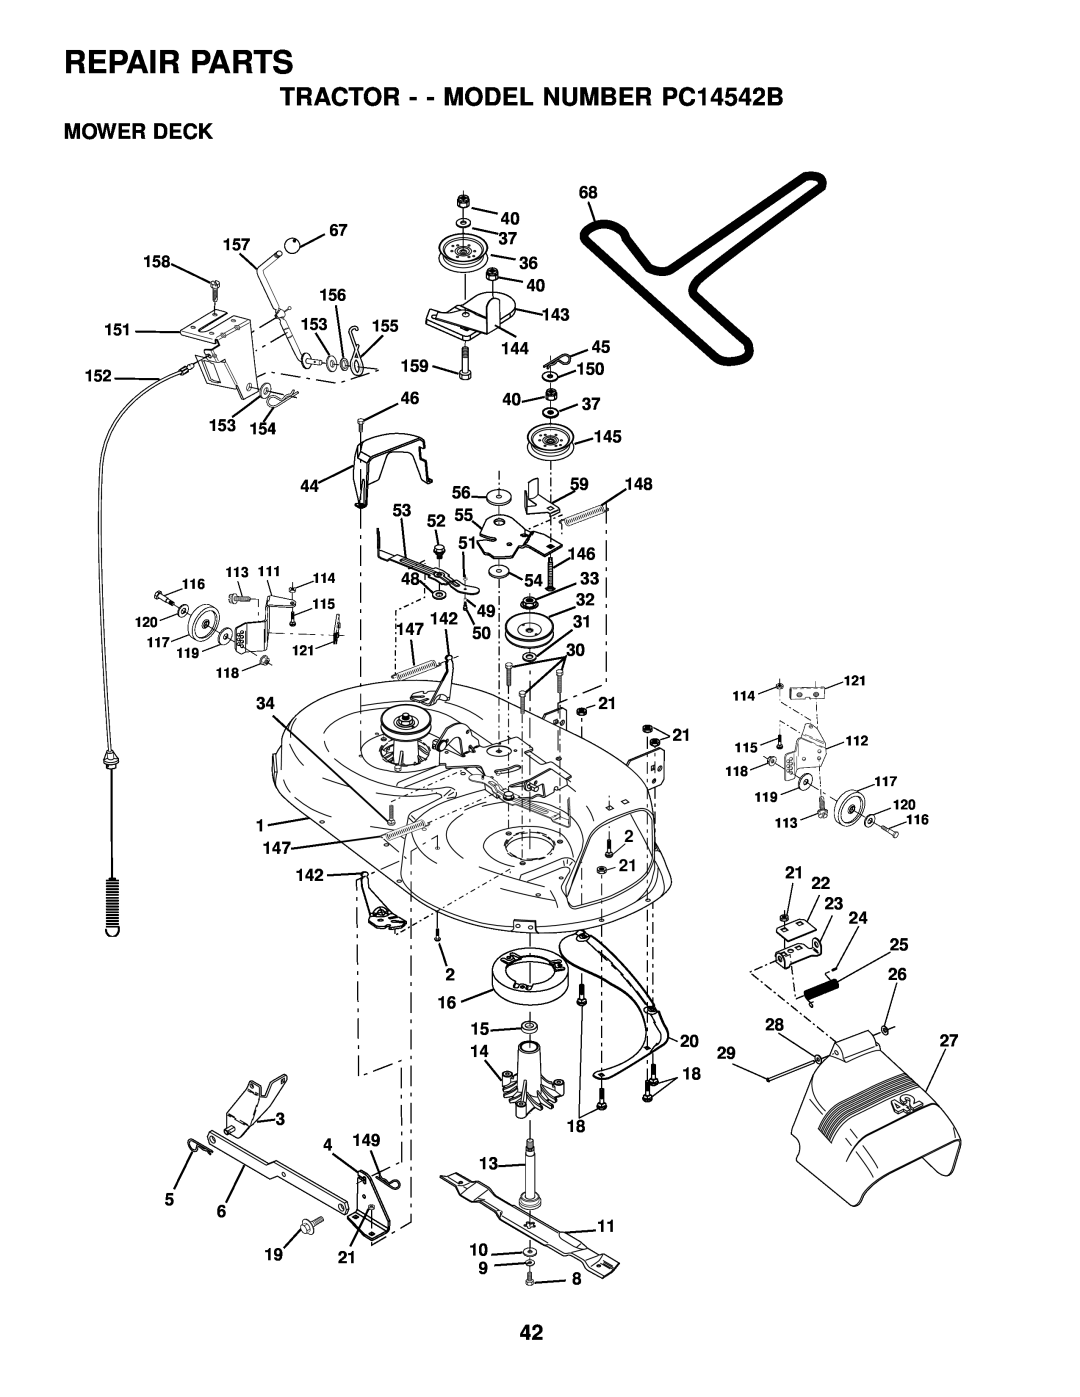 Poulan 176851 owner manual Mower Deck, Repair Parts, TRACTOR - - MODEL NUMBER PC14542B 